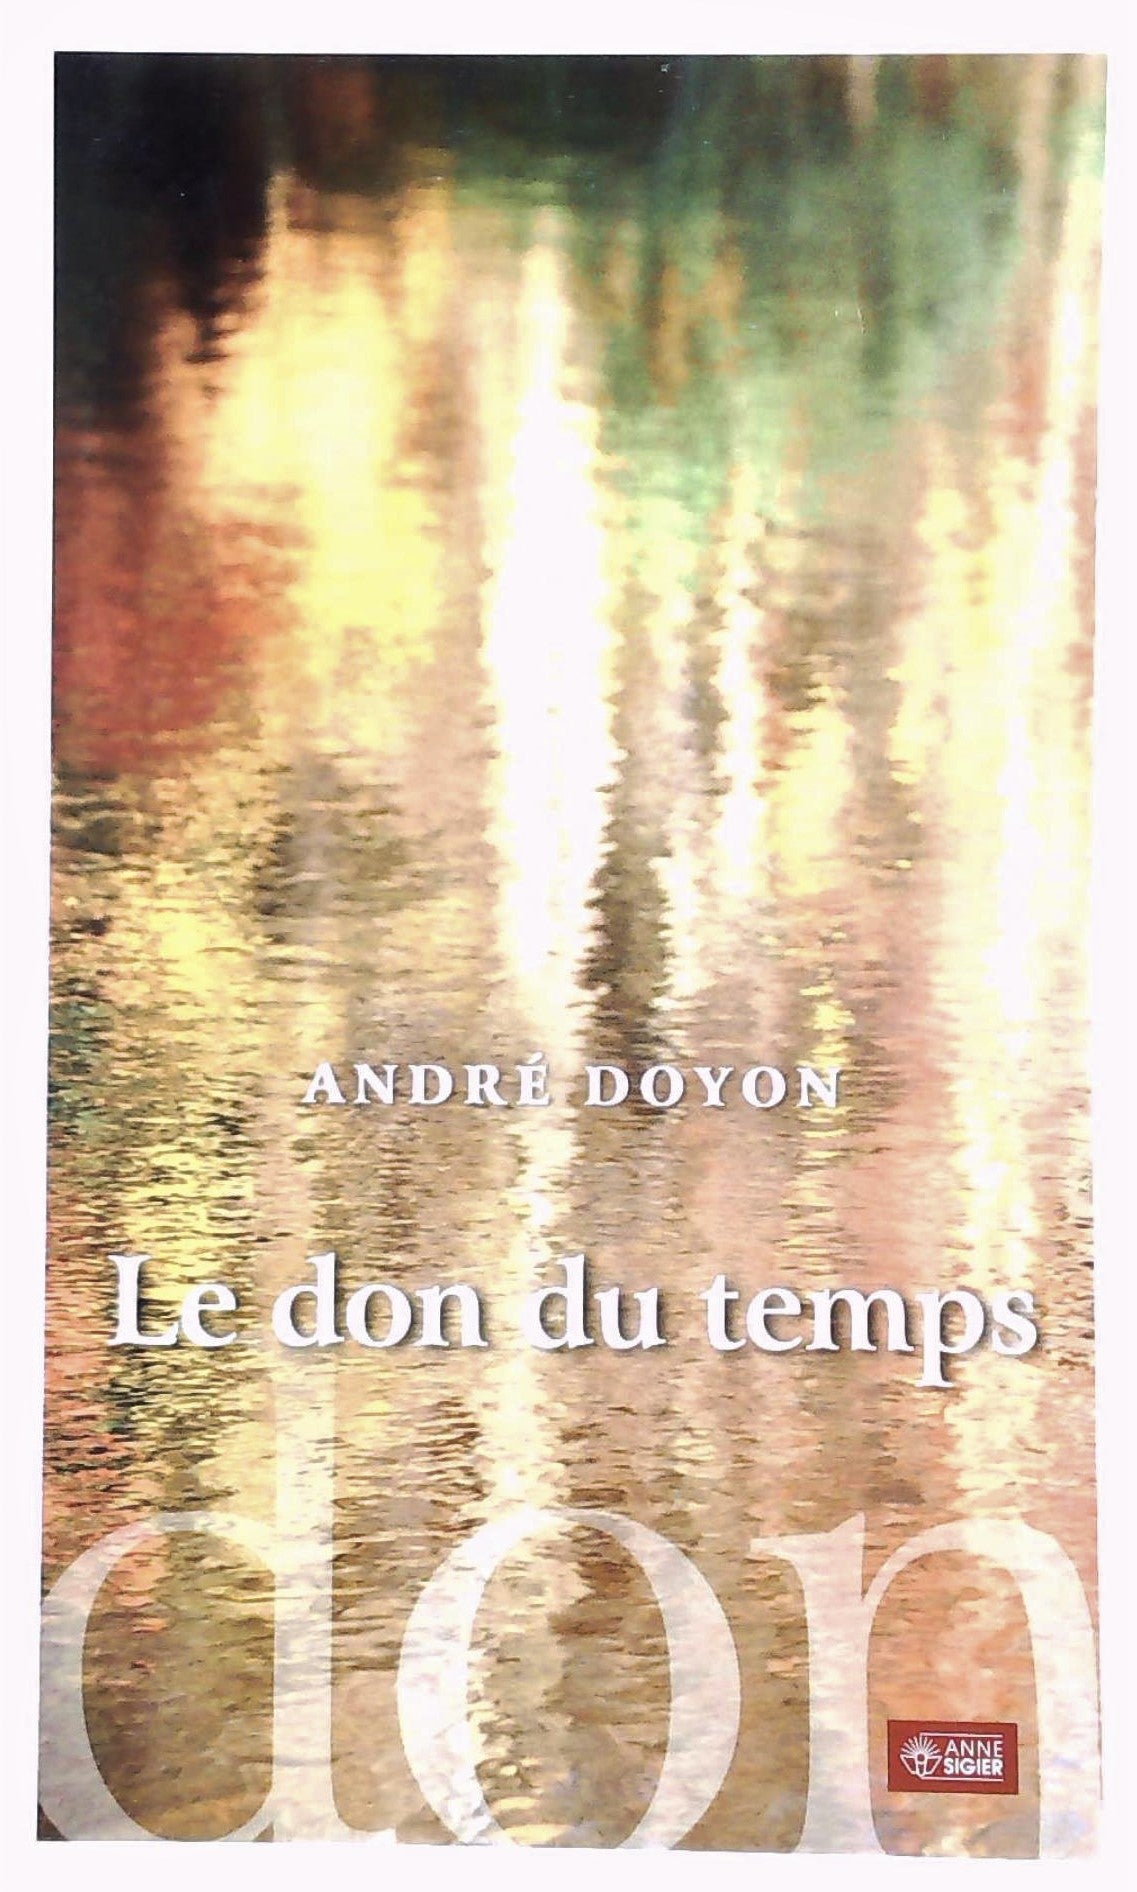 Livre ISBN 2891294807 Le don de temps (André Doyon)